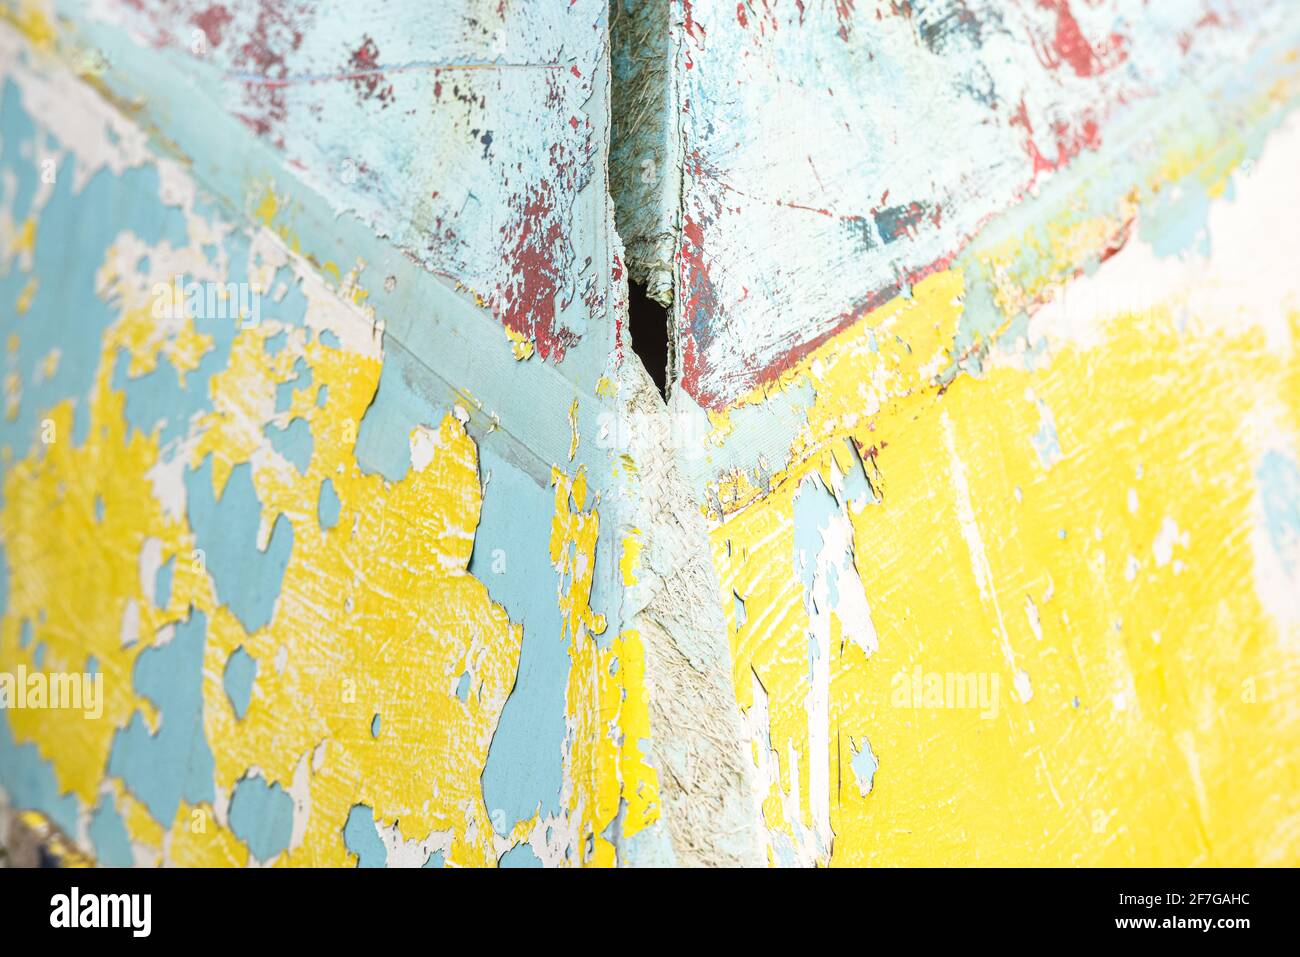 Arrière-plan abstrait peint avec des motifs aléatoires de couches de vieux et de la peinture abîmé sur une surface en bois Banque D'Images